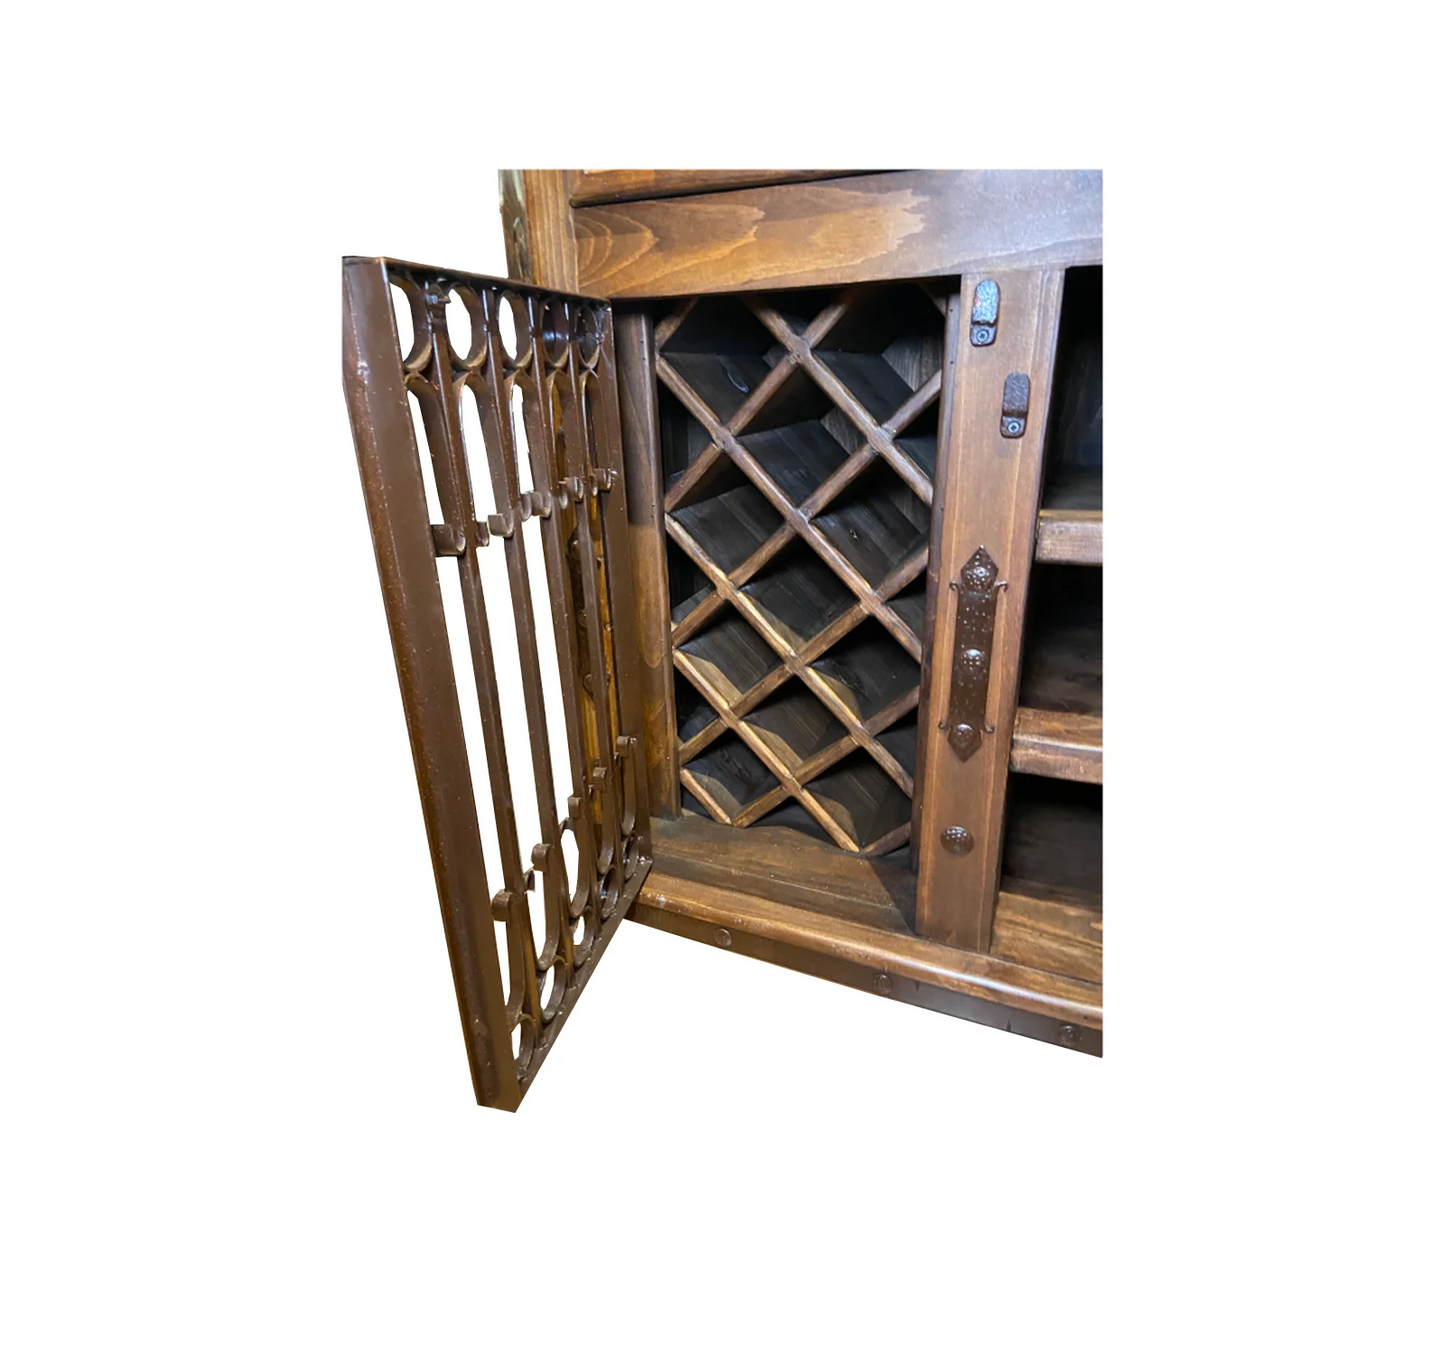 Solid wood wine rack on left